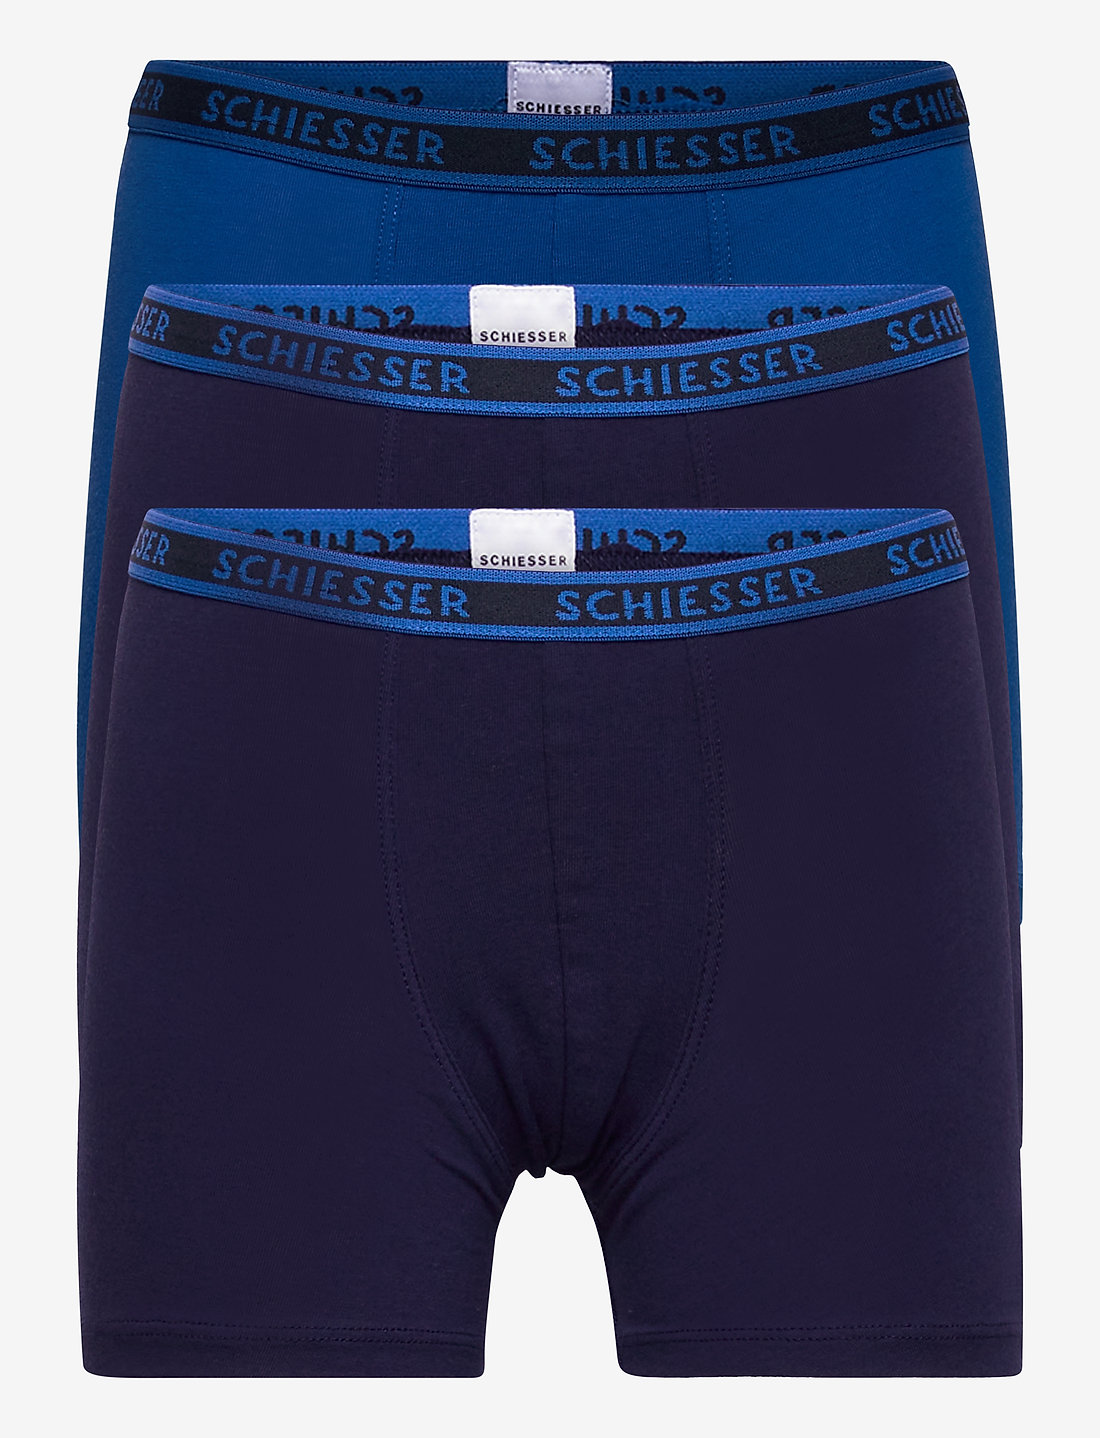 Schiesser Shorts - Underwear 